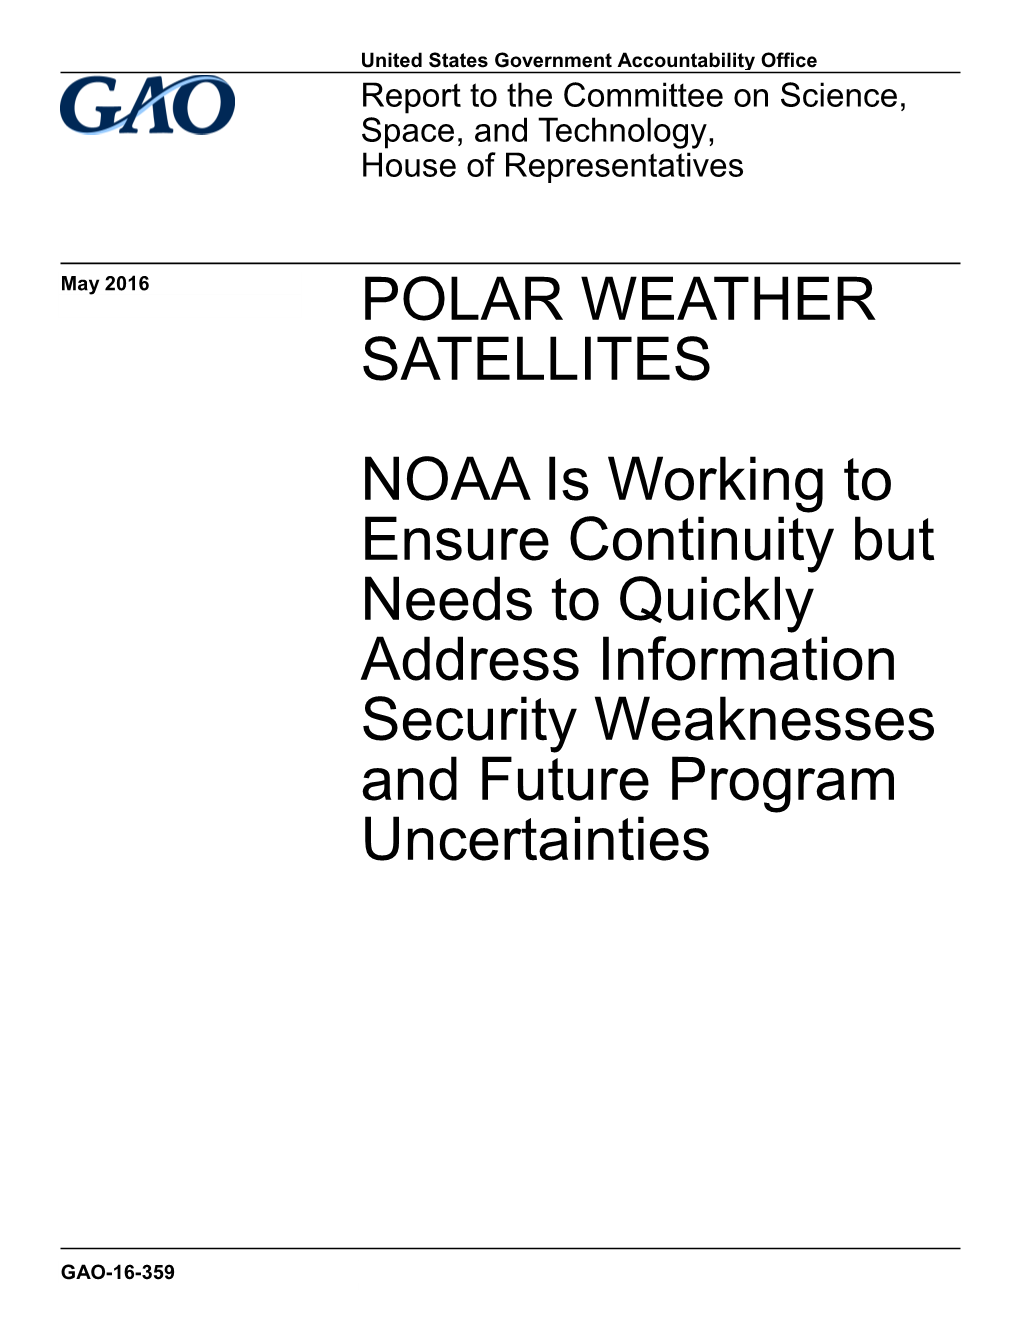 GAO-16-359, Polar Weather Satellites